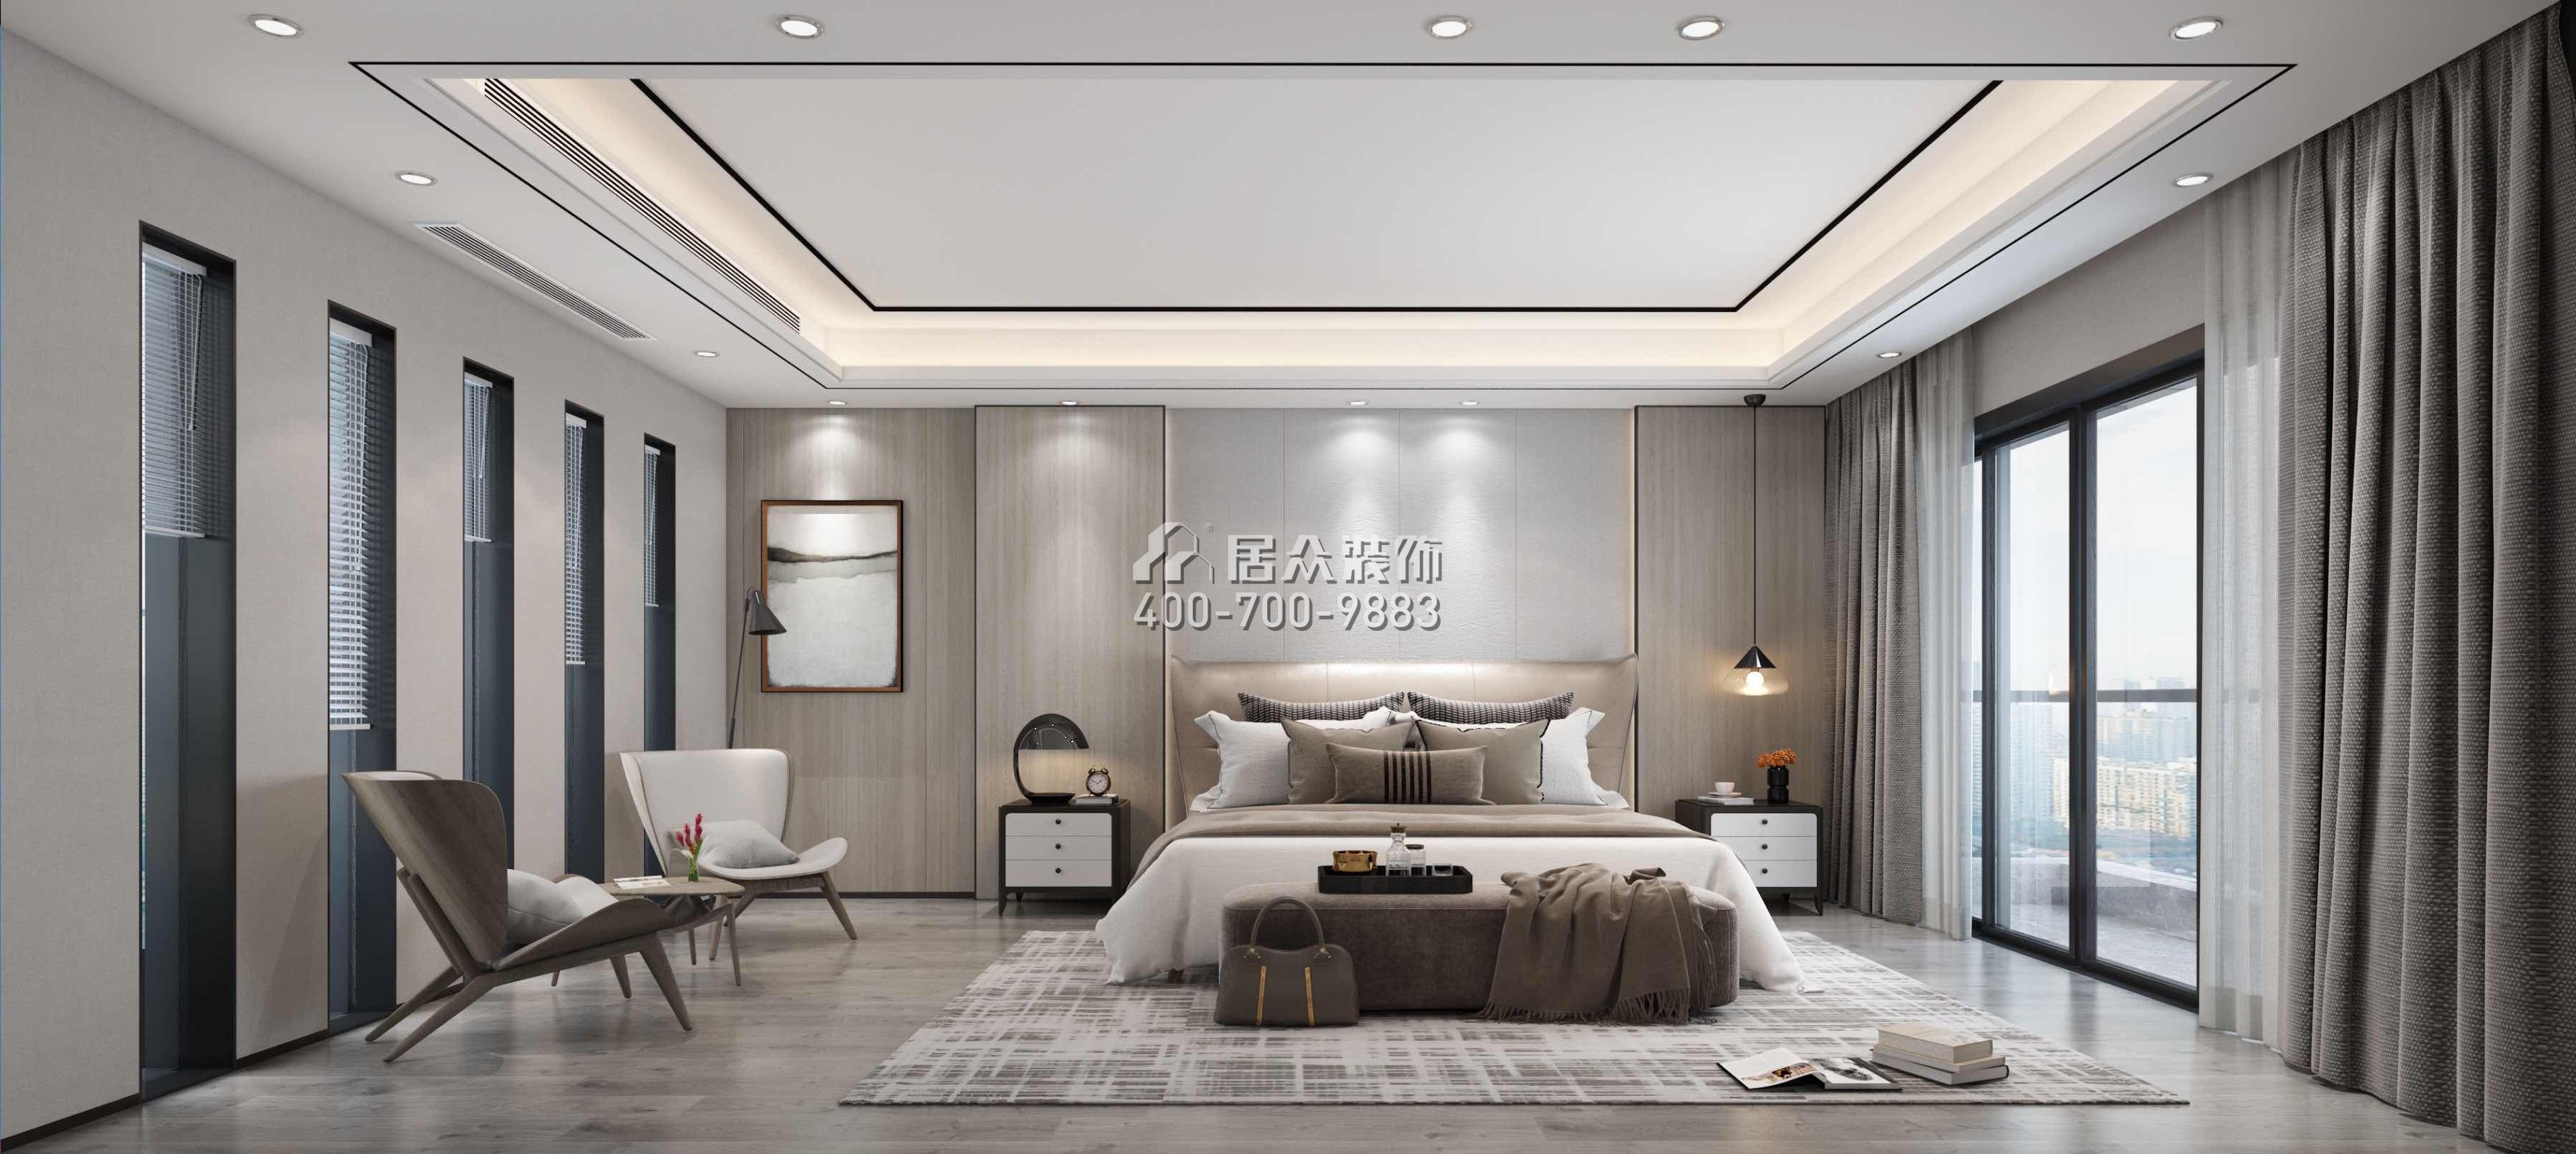 中海大山地468平方米现代简约风格别墅户型卧室装修效果图